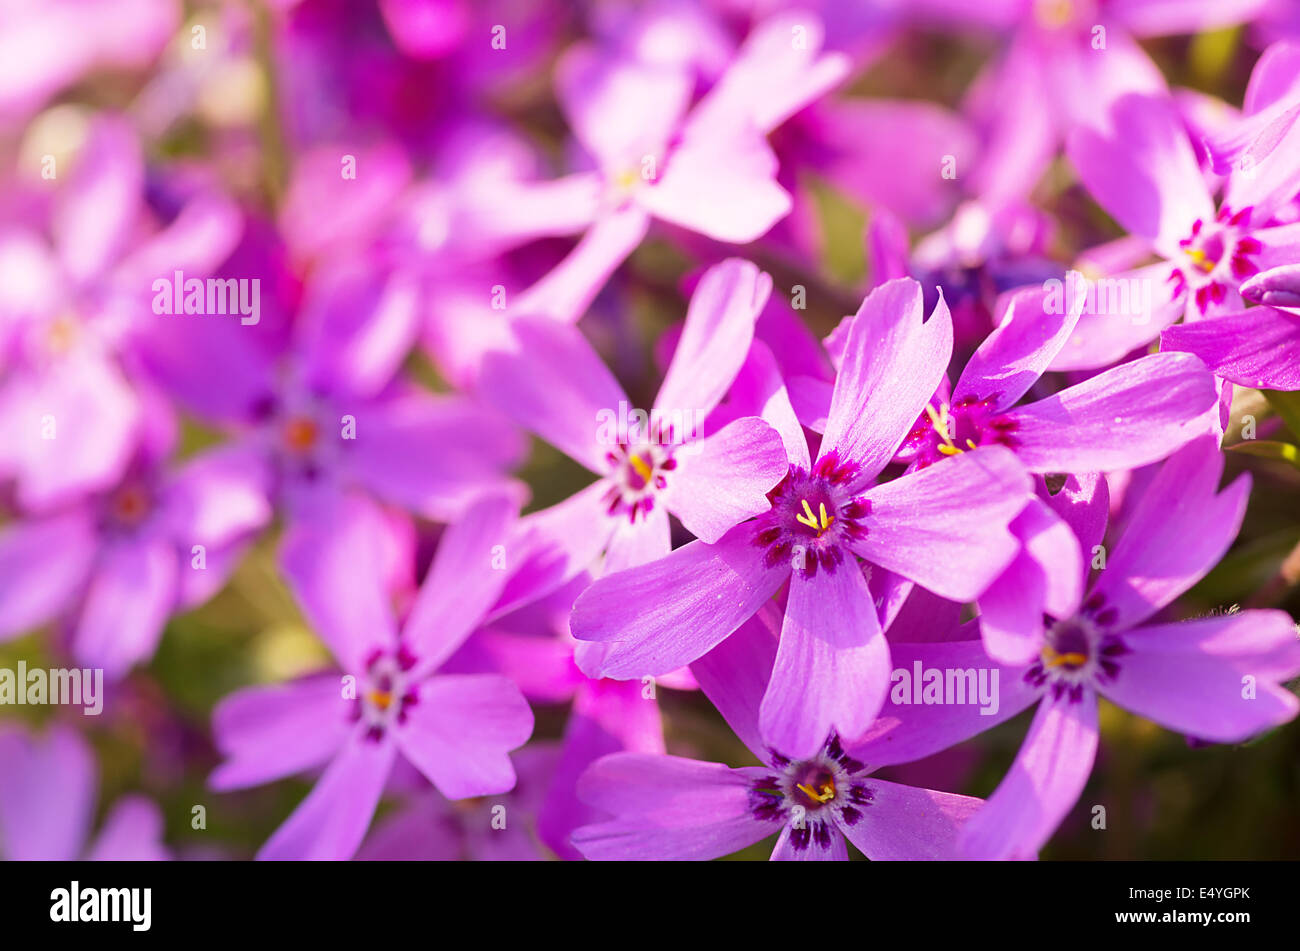 Phlox szydlasty with pink flowers Stock Photo